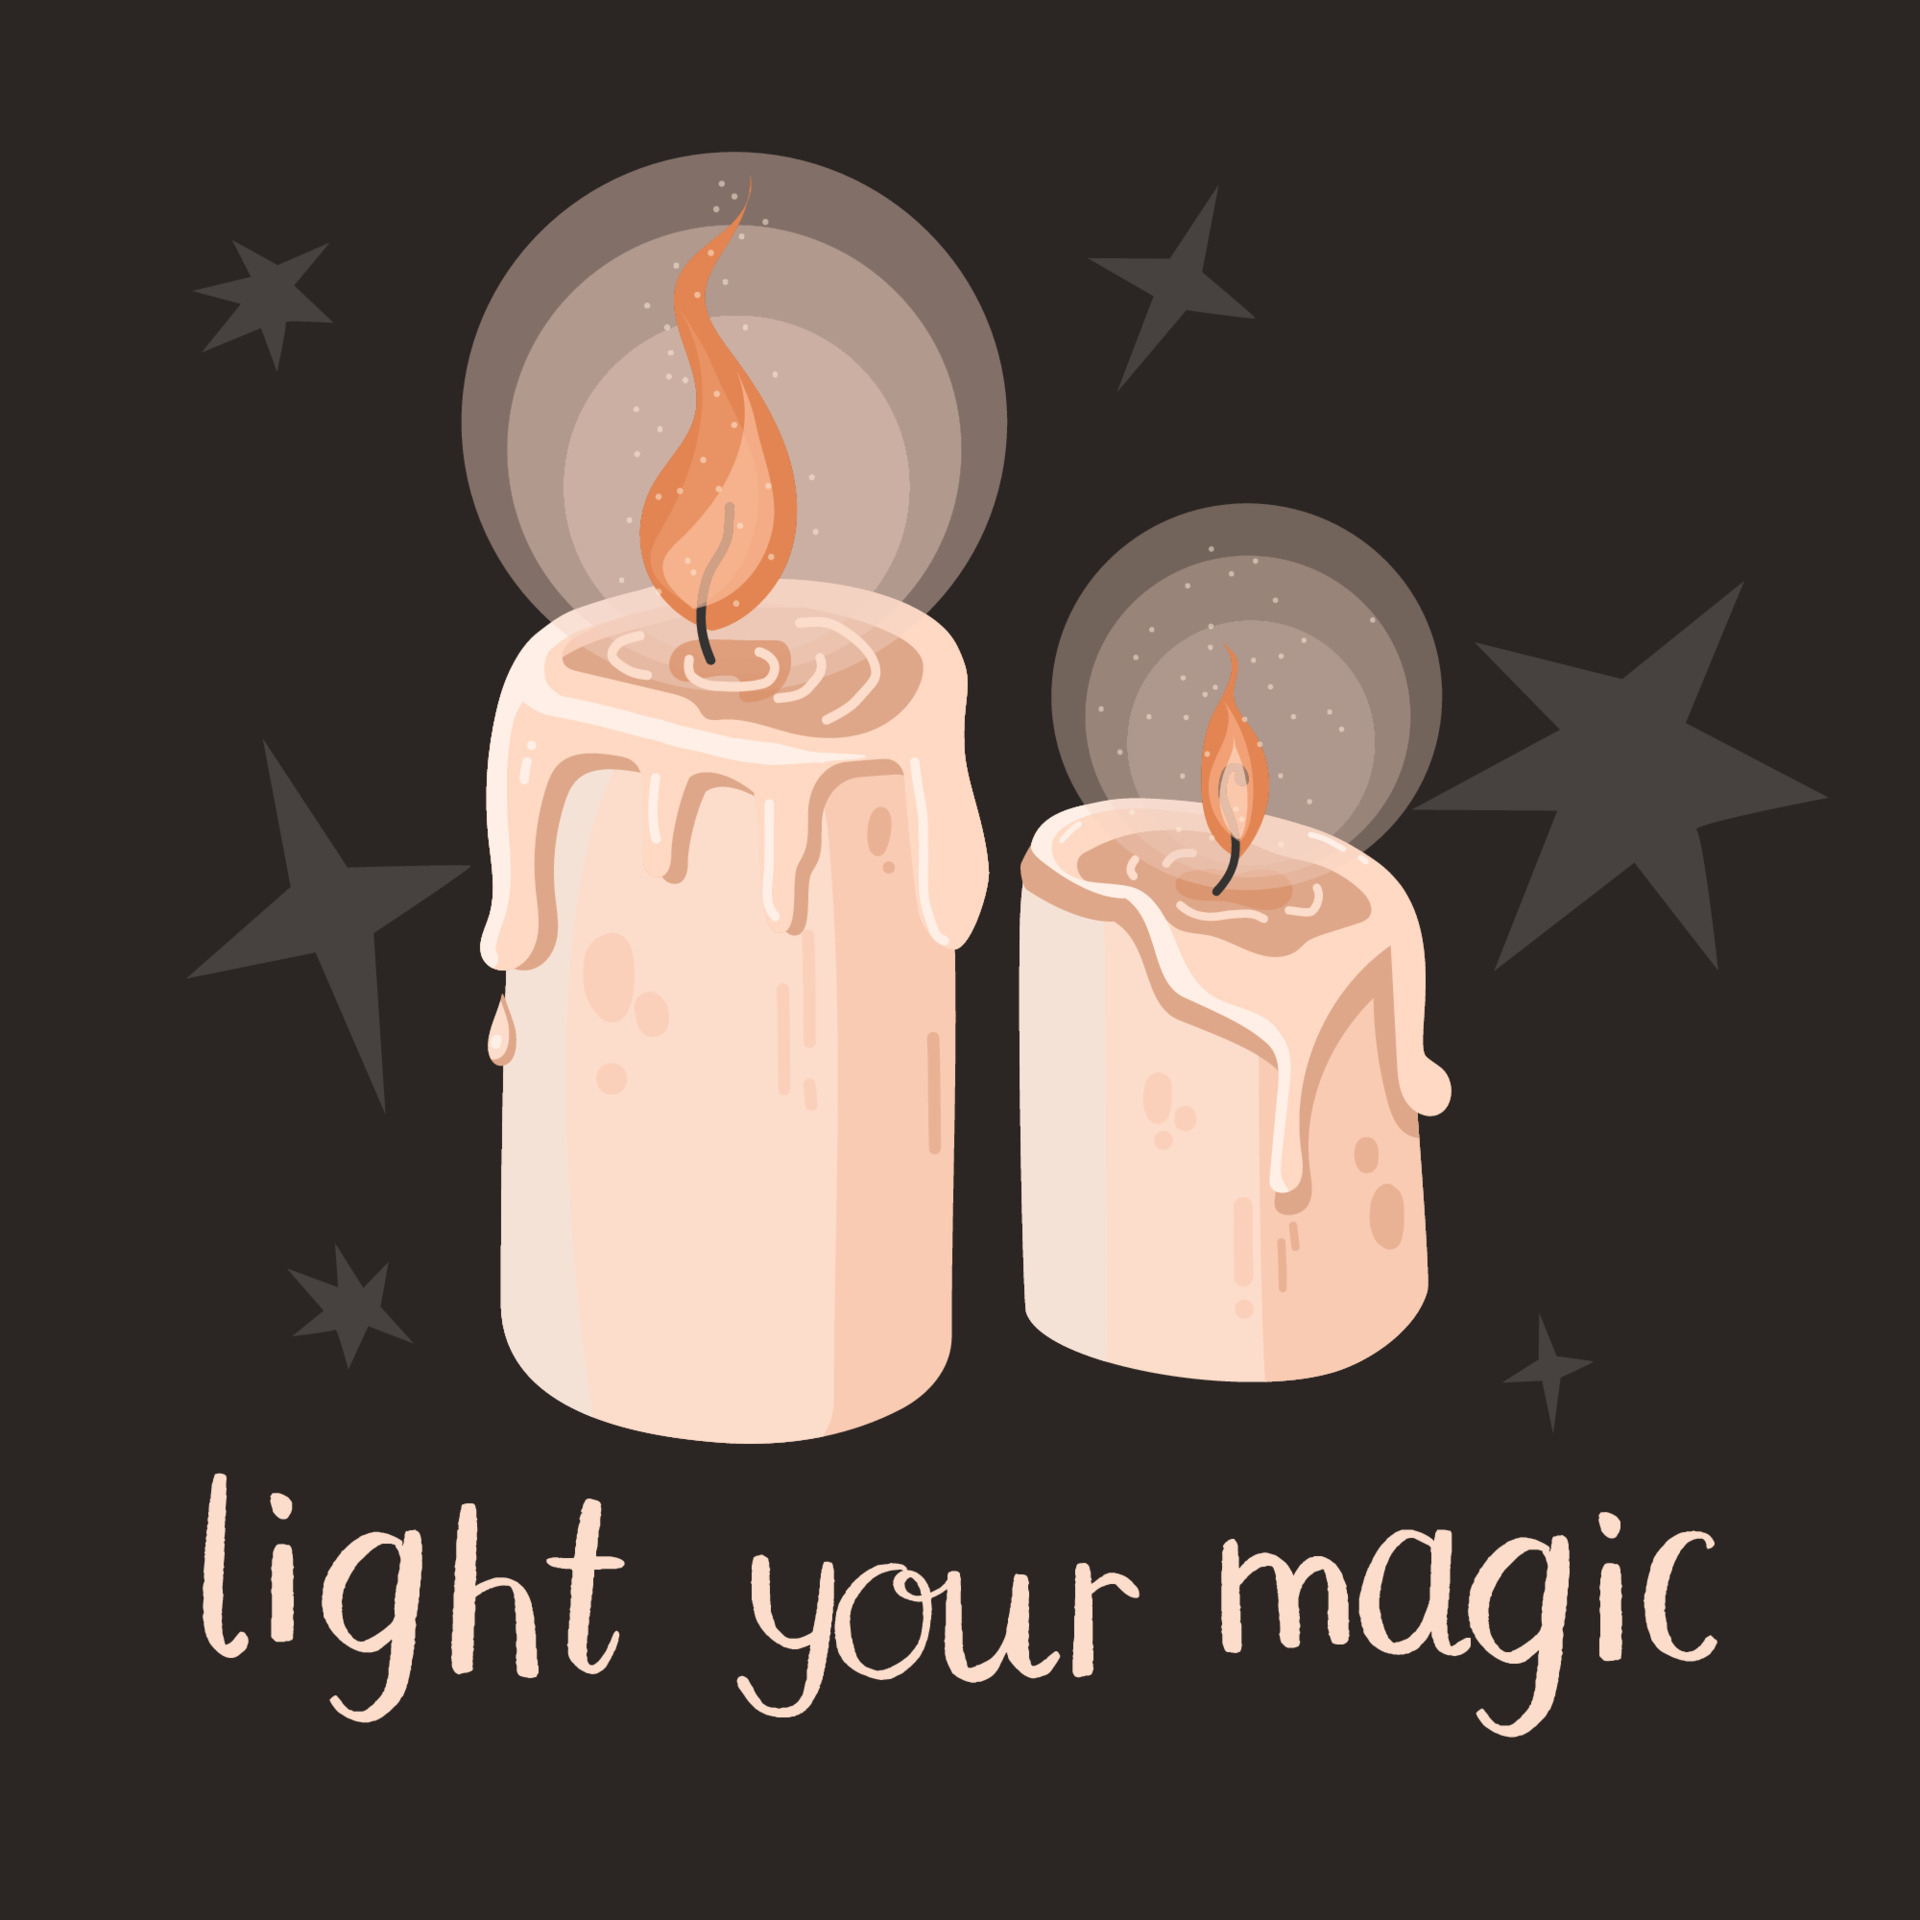 due candele di cera magica accese con citazione su sfondo scuro